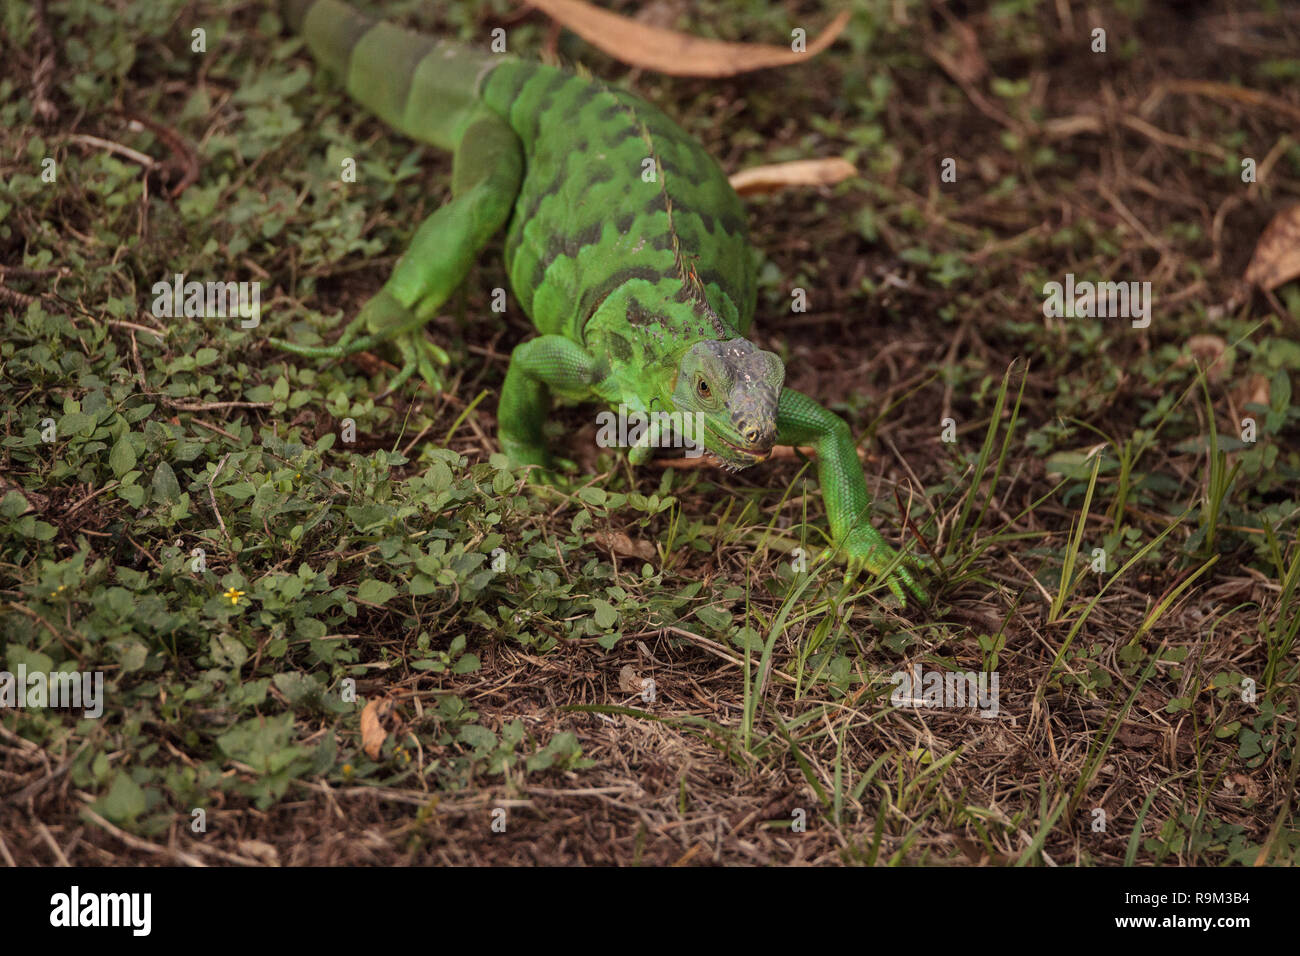 Cabritos iguana verde conocido científicamente como Iguana iguana es una especie invasora en la Florida. Foto de stock